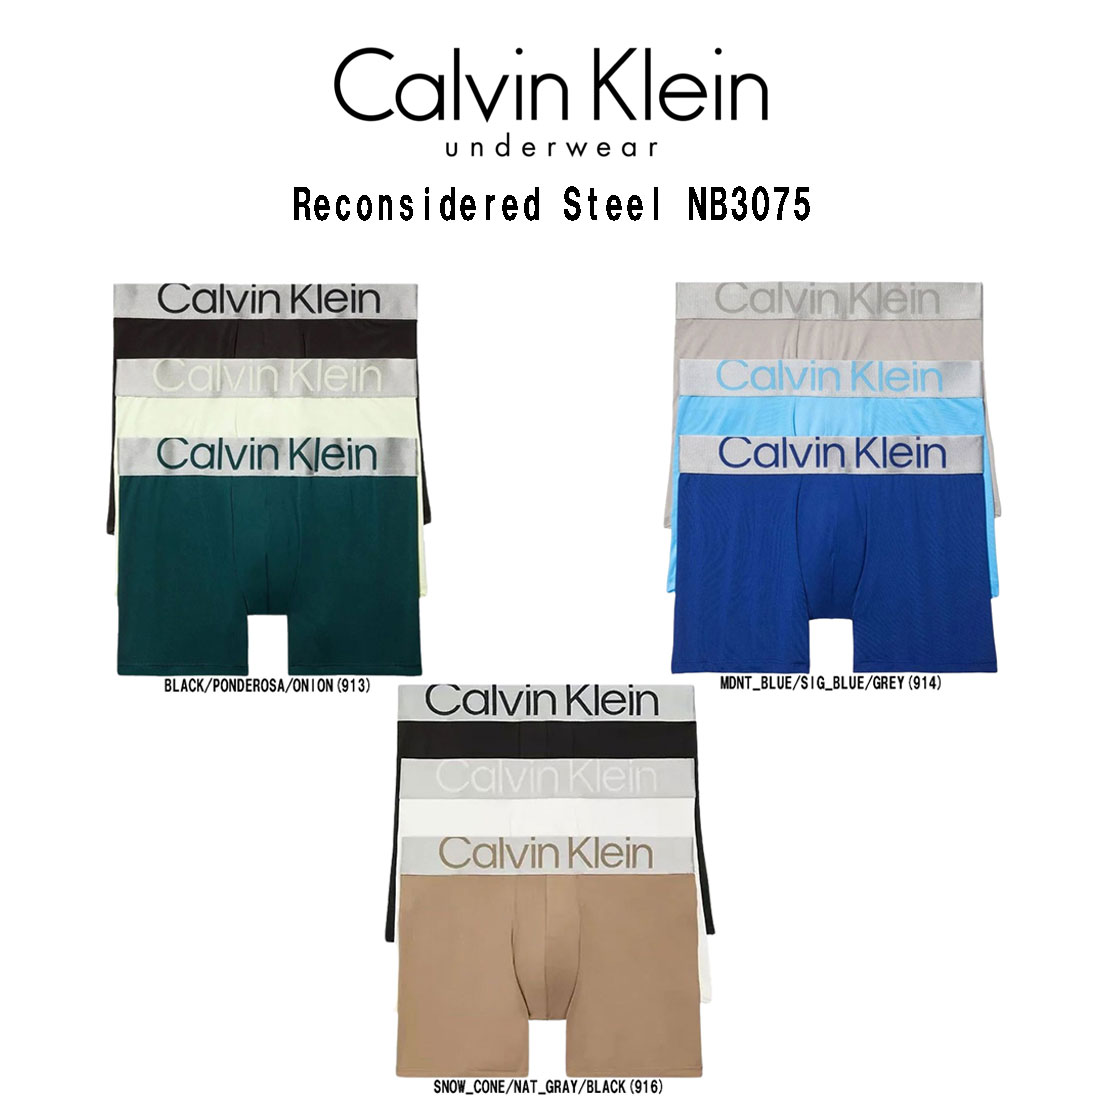 Calvin Klein(カルバンクライン)ボクサーパンツ 前閉じ 3枚セット アソート お買い得 パック メンズ 男性用 下着 CK Reconsidered Steel NB3075